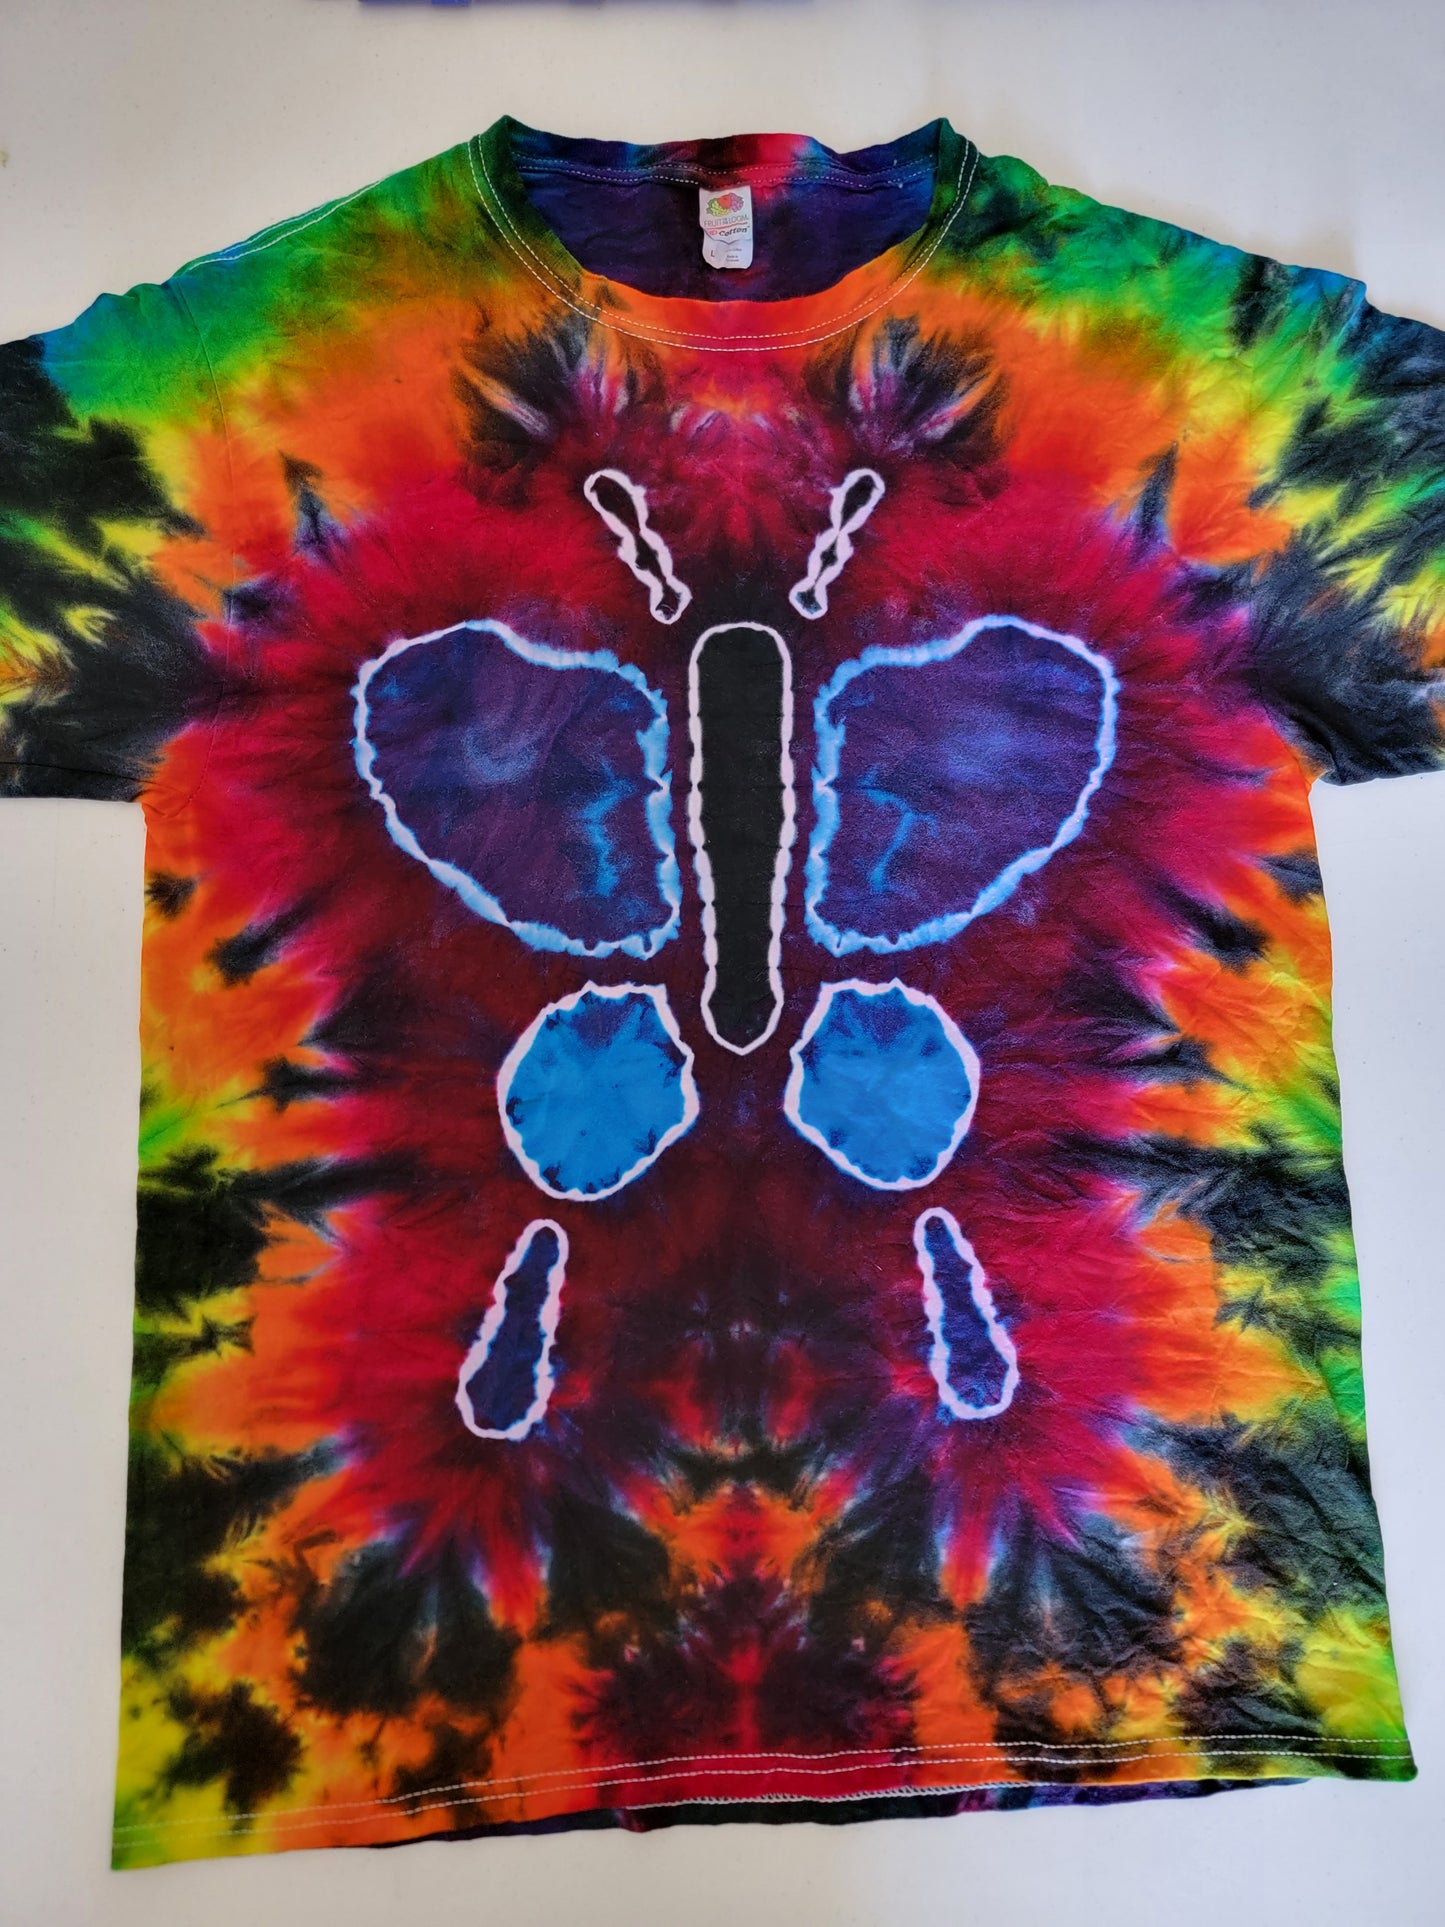 Butterfly tie dye